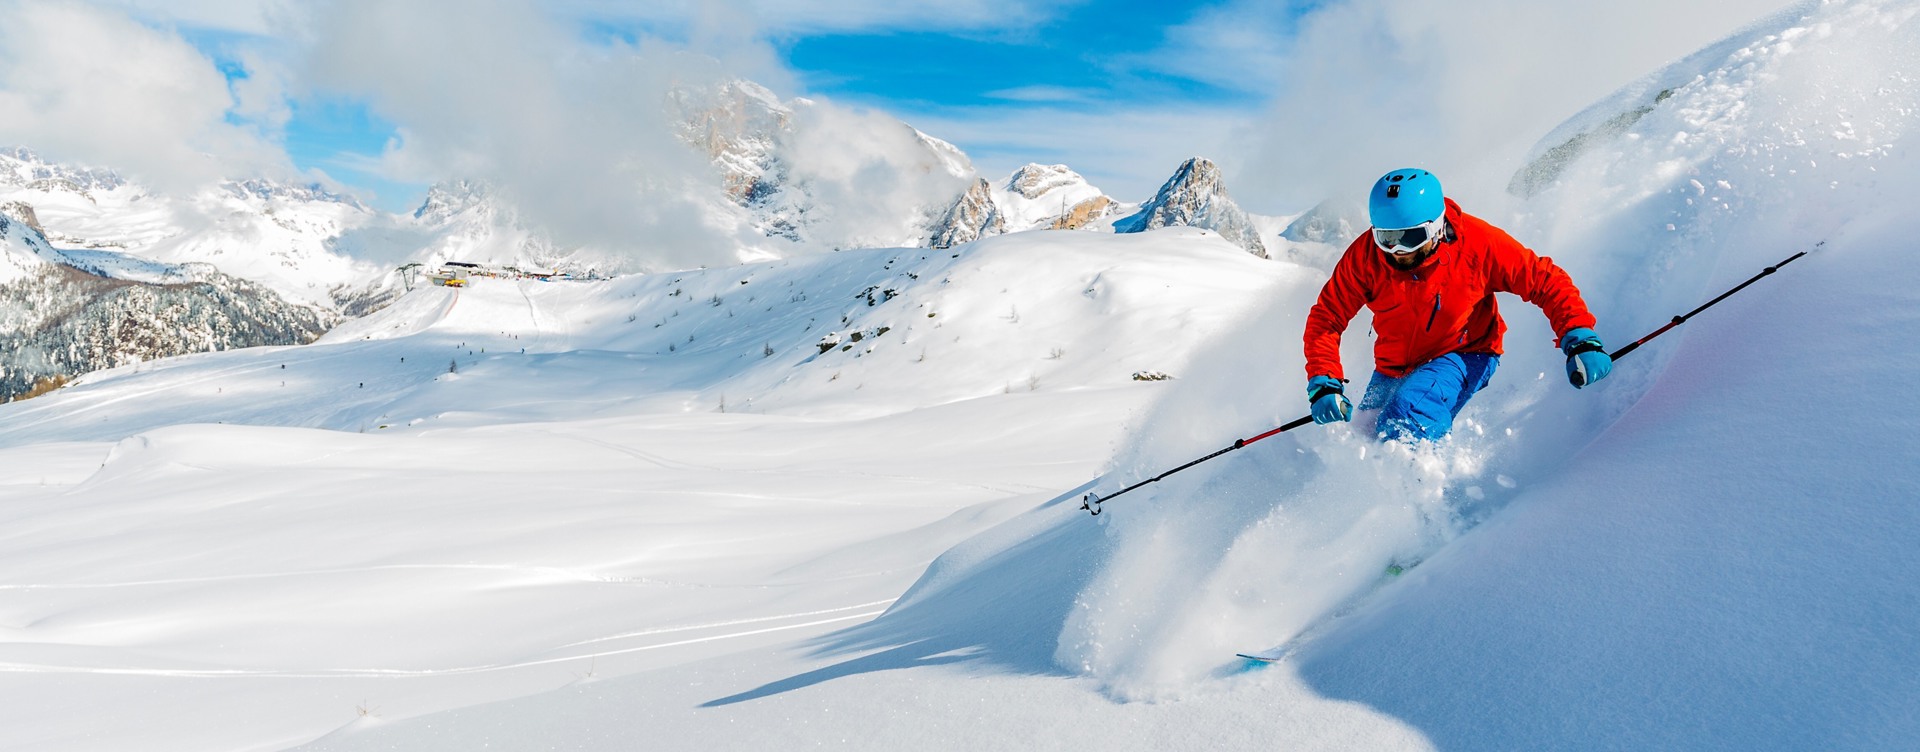 Ontdek de schitterende skigebieden
in en rondom Vallorcine